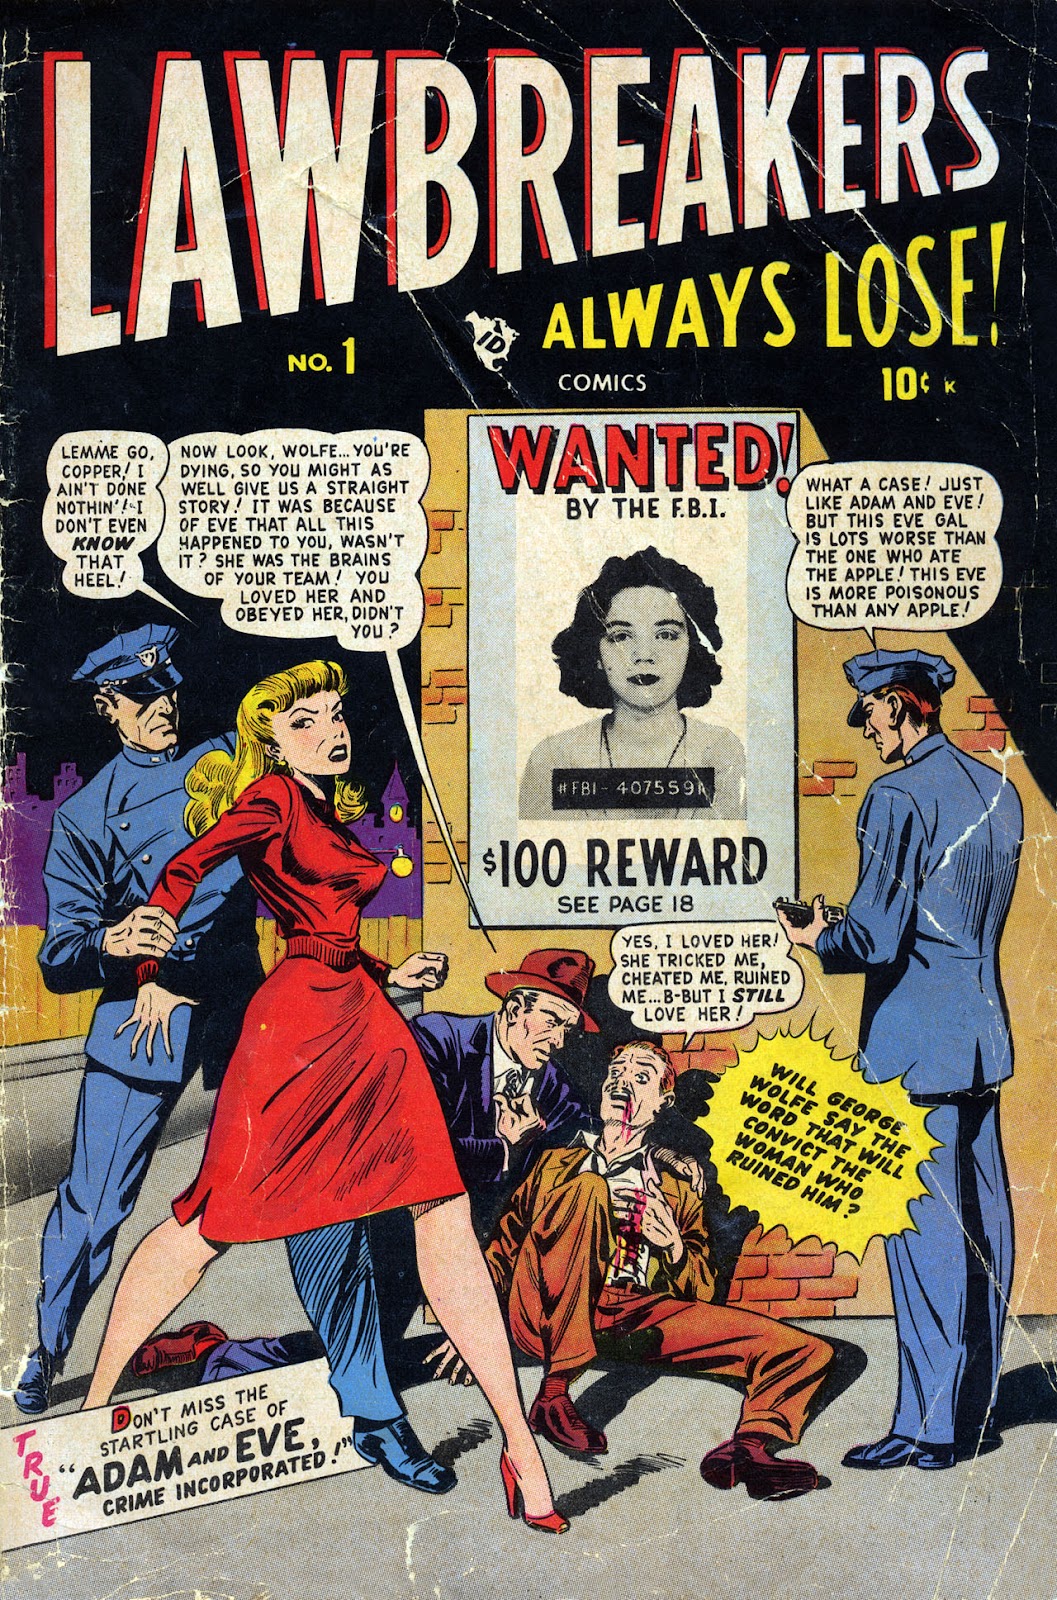 Lawbreakers Always Lose! issue 1 - Page 1